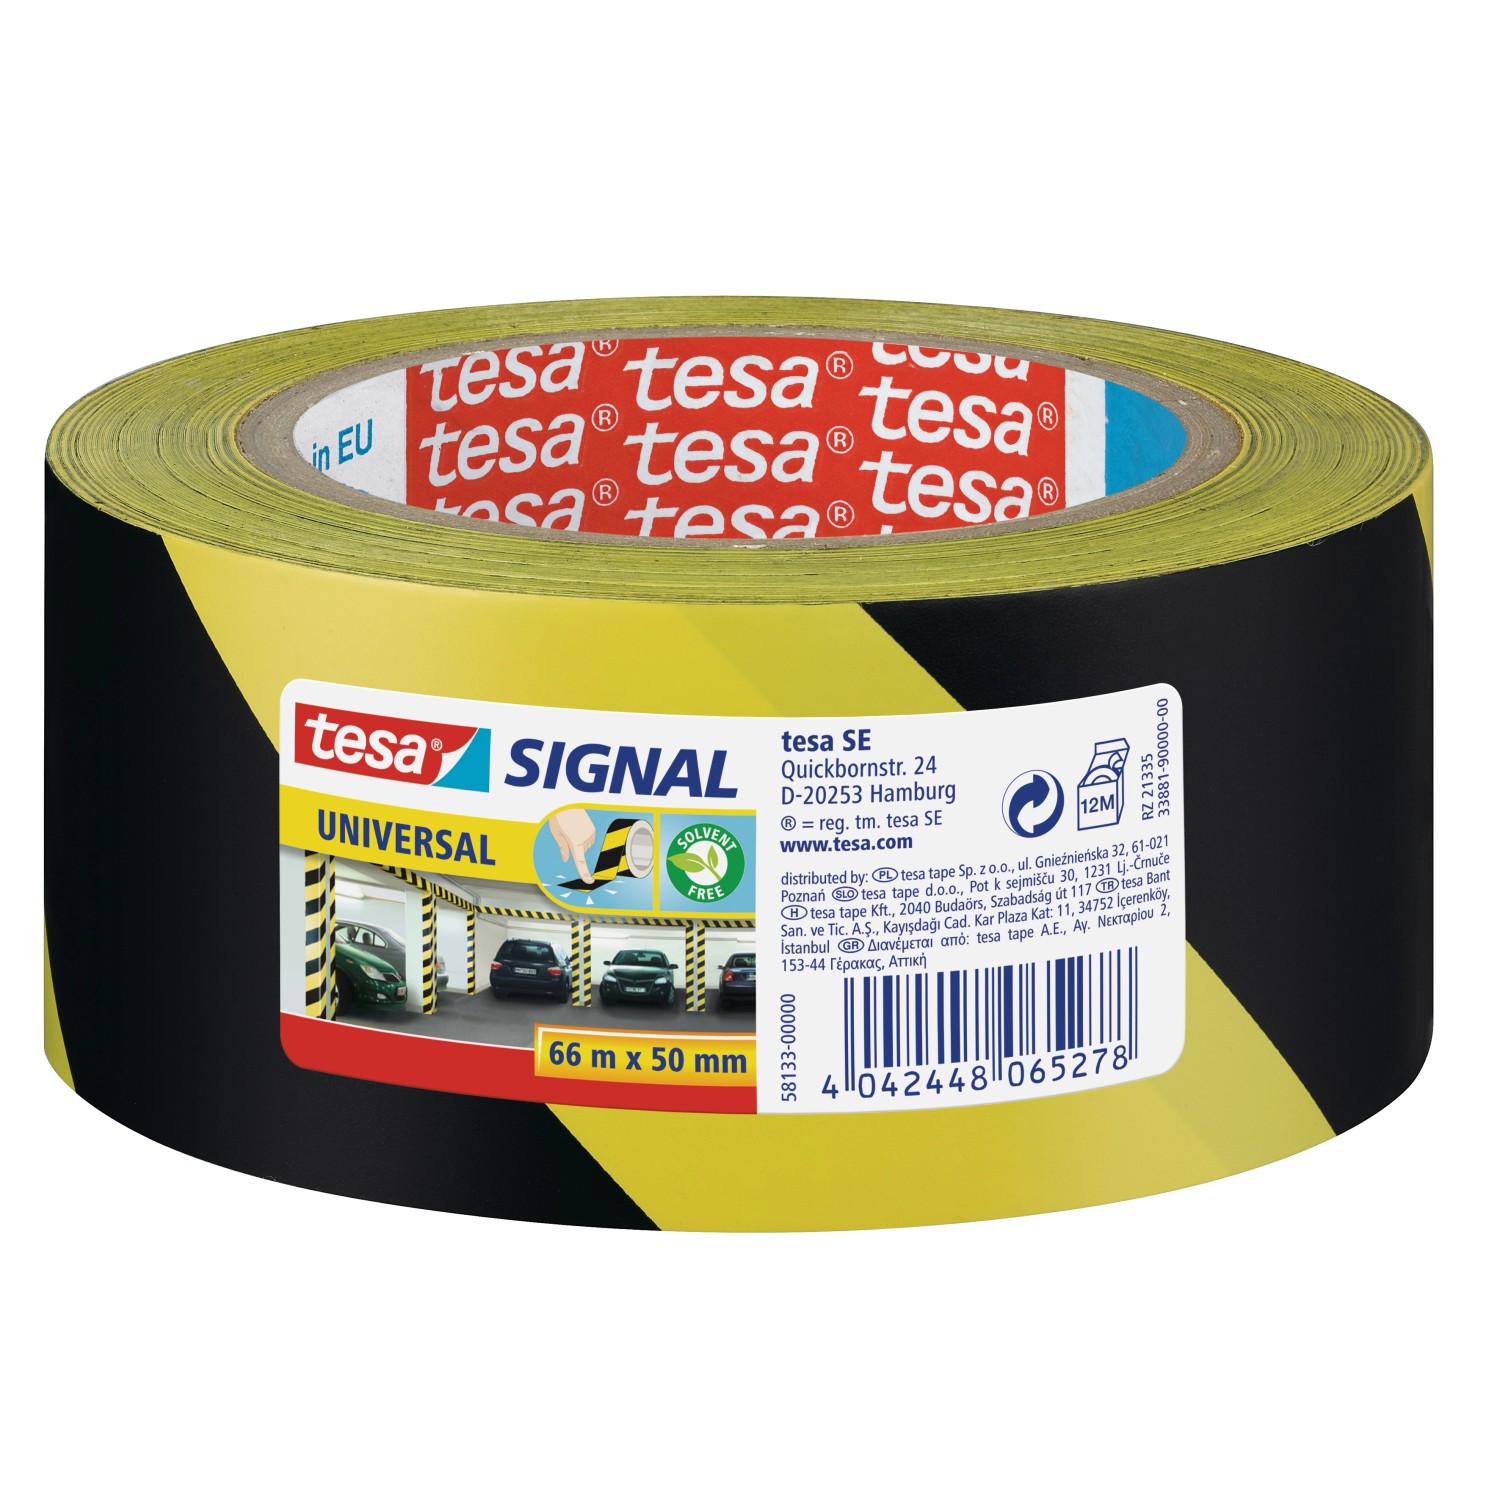 Tesa Signal Markierungsklebeband Universal Gelb-Schwarz 66 m x 50 mm